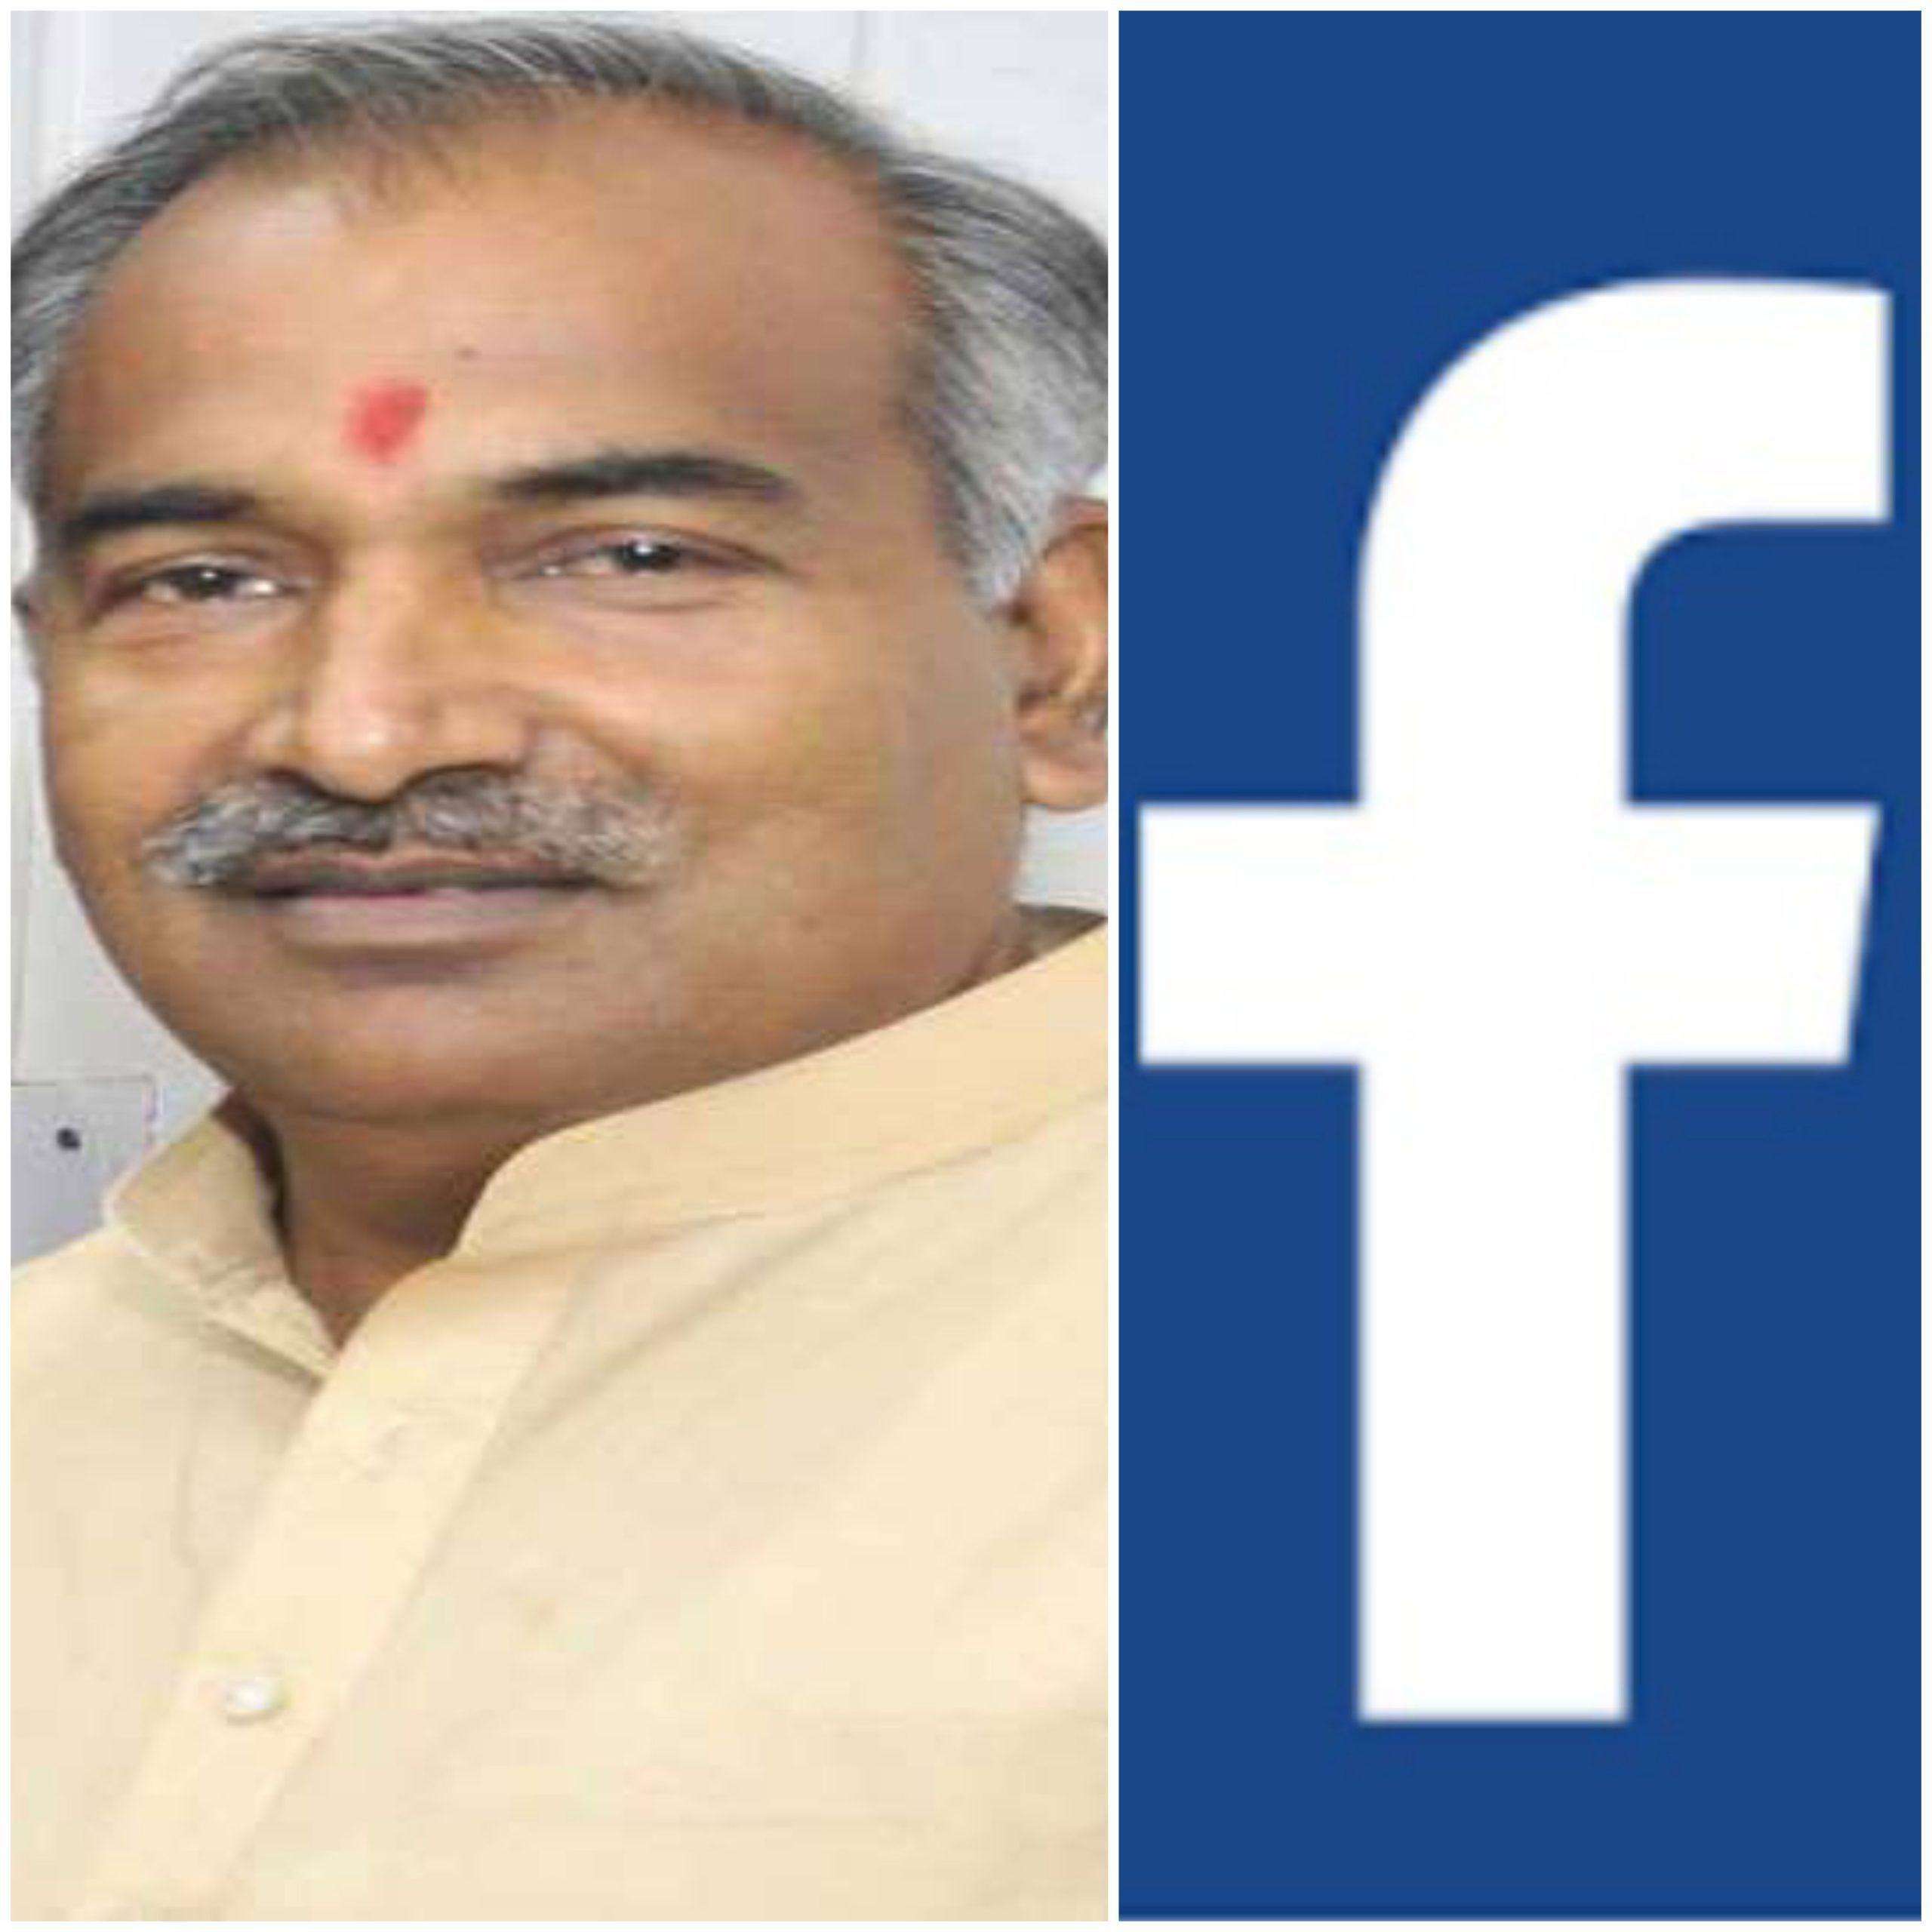 रुद्रपुर: शिक्षा मंत्री अरविंद पाण्डेय का फेसबुक अकाउंट हैक, दुरुपयोग की आशंका